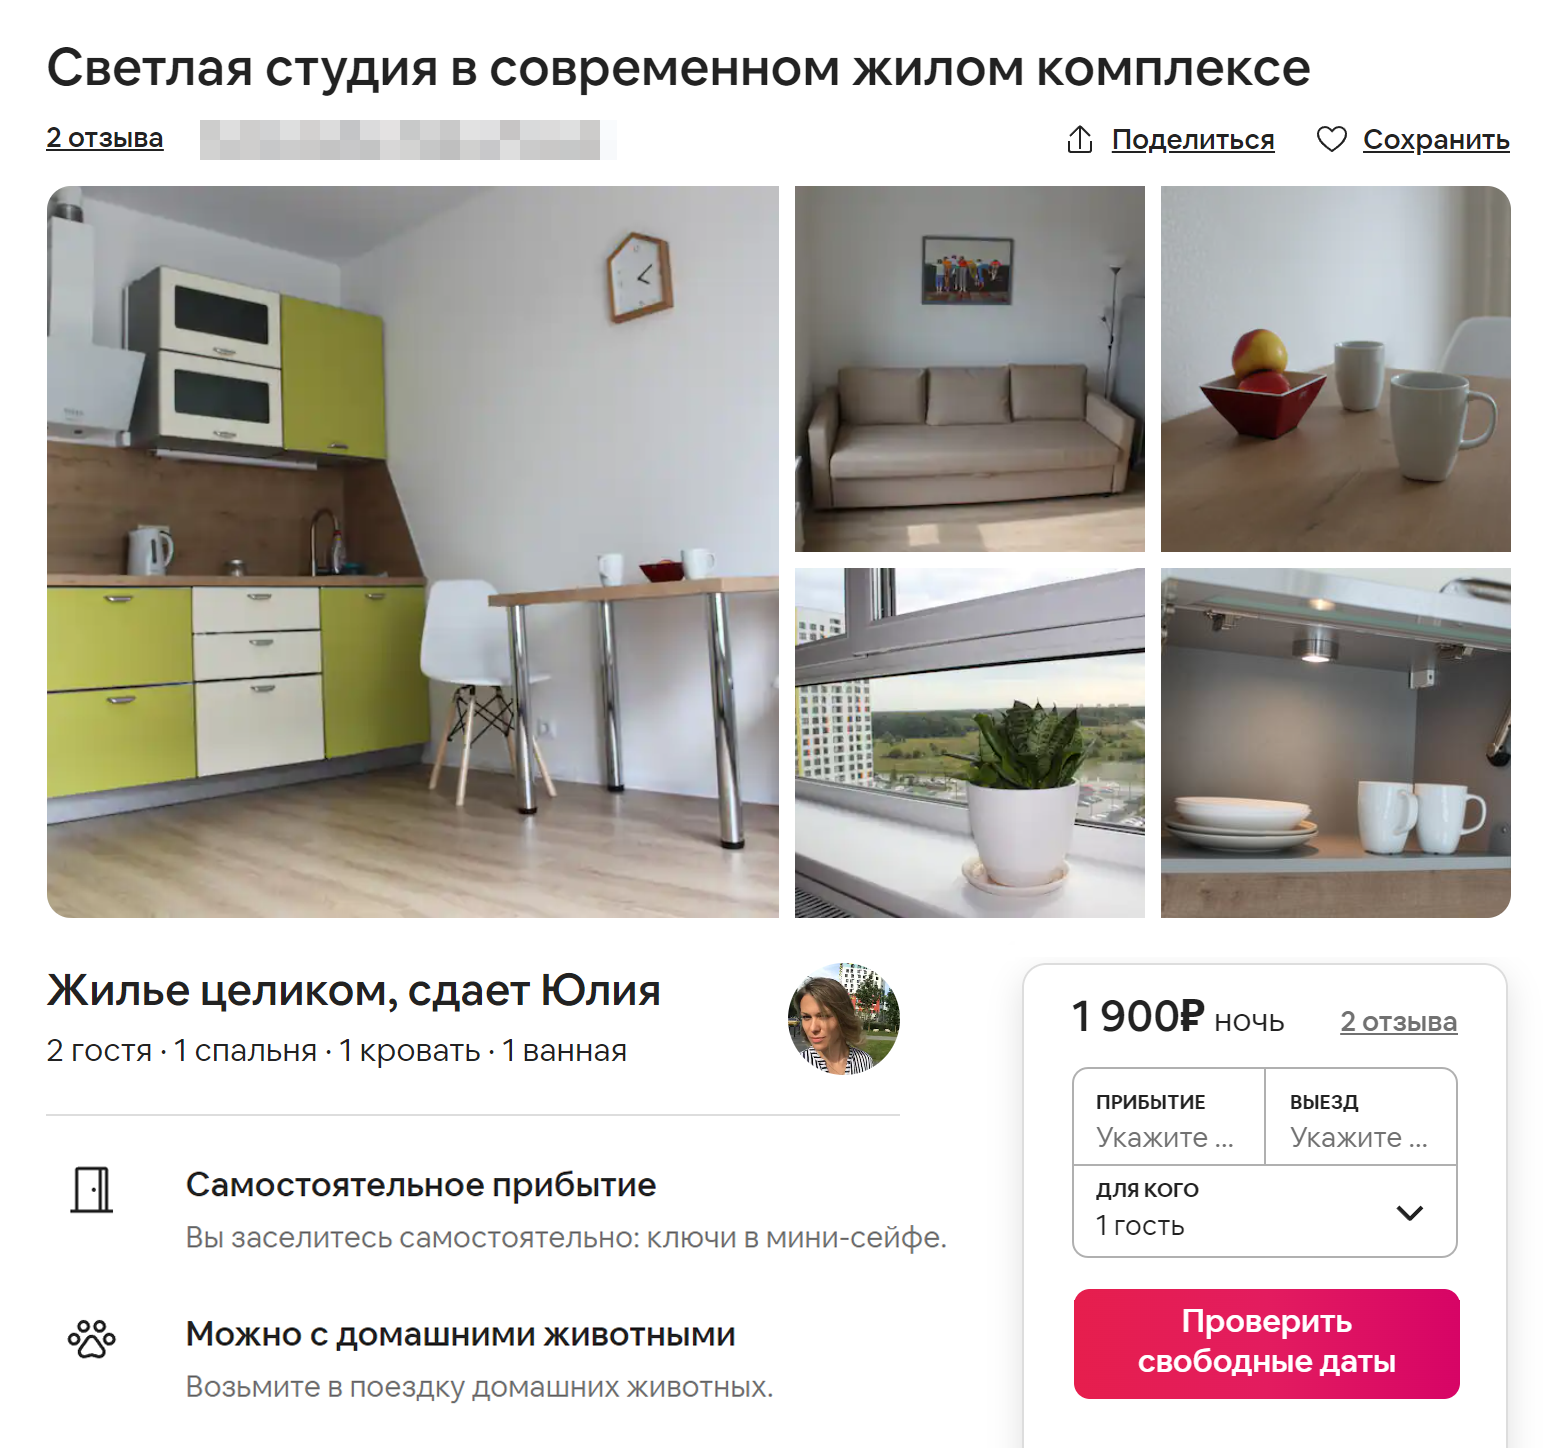 Так выглядело объявление на Airbnb. Этим сервисом я пользовалась еще более двух месяцев. Источник: airbnb.ru